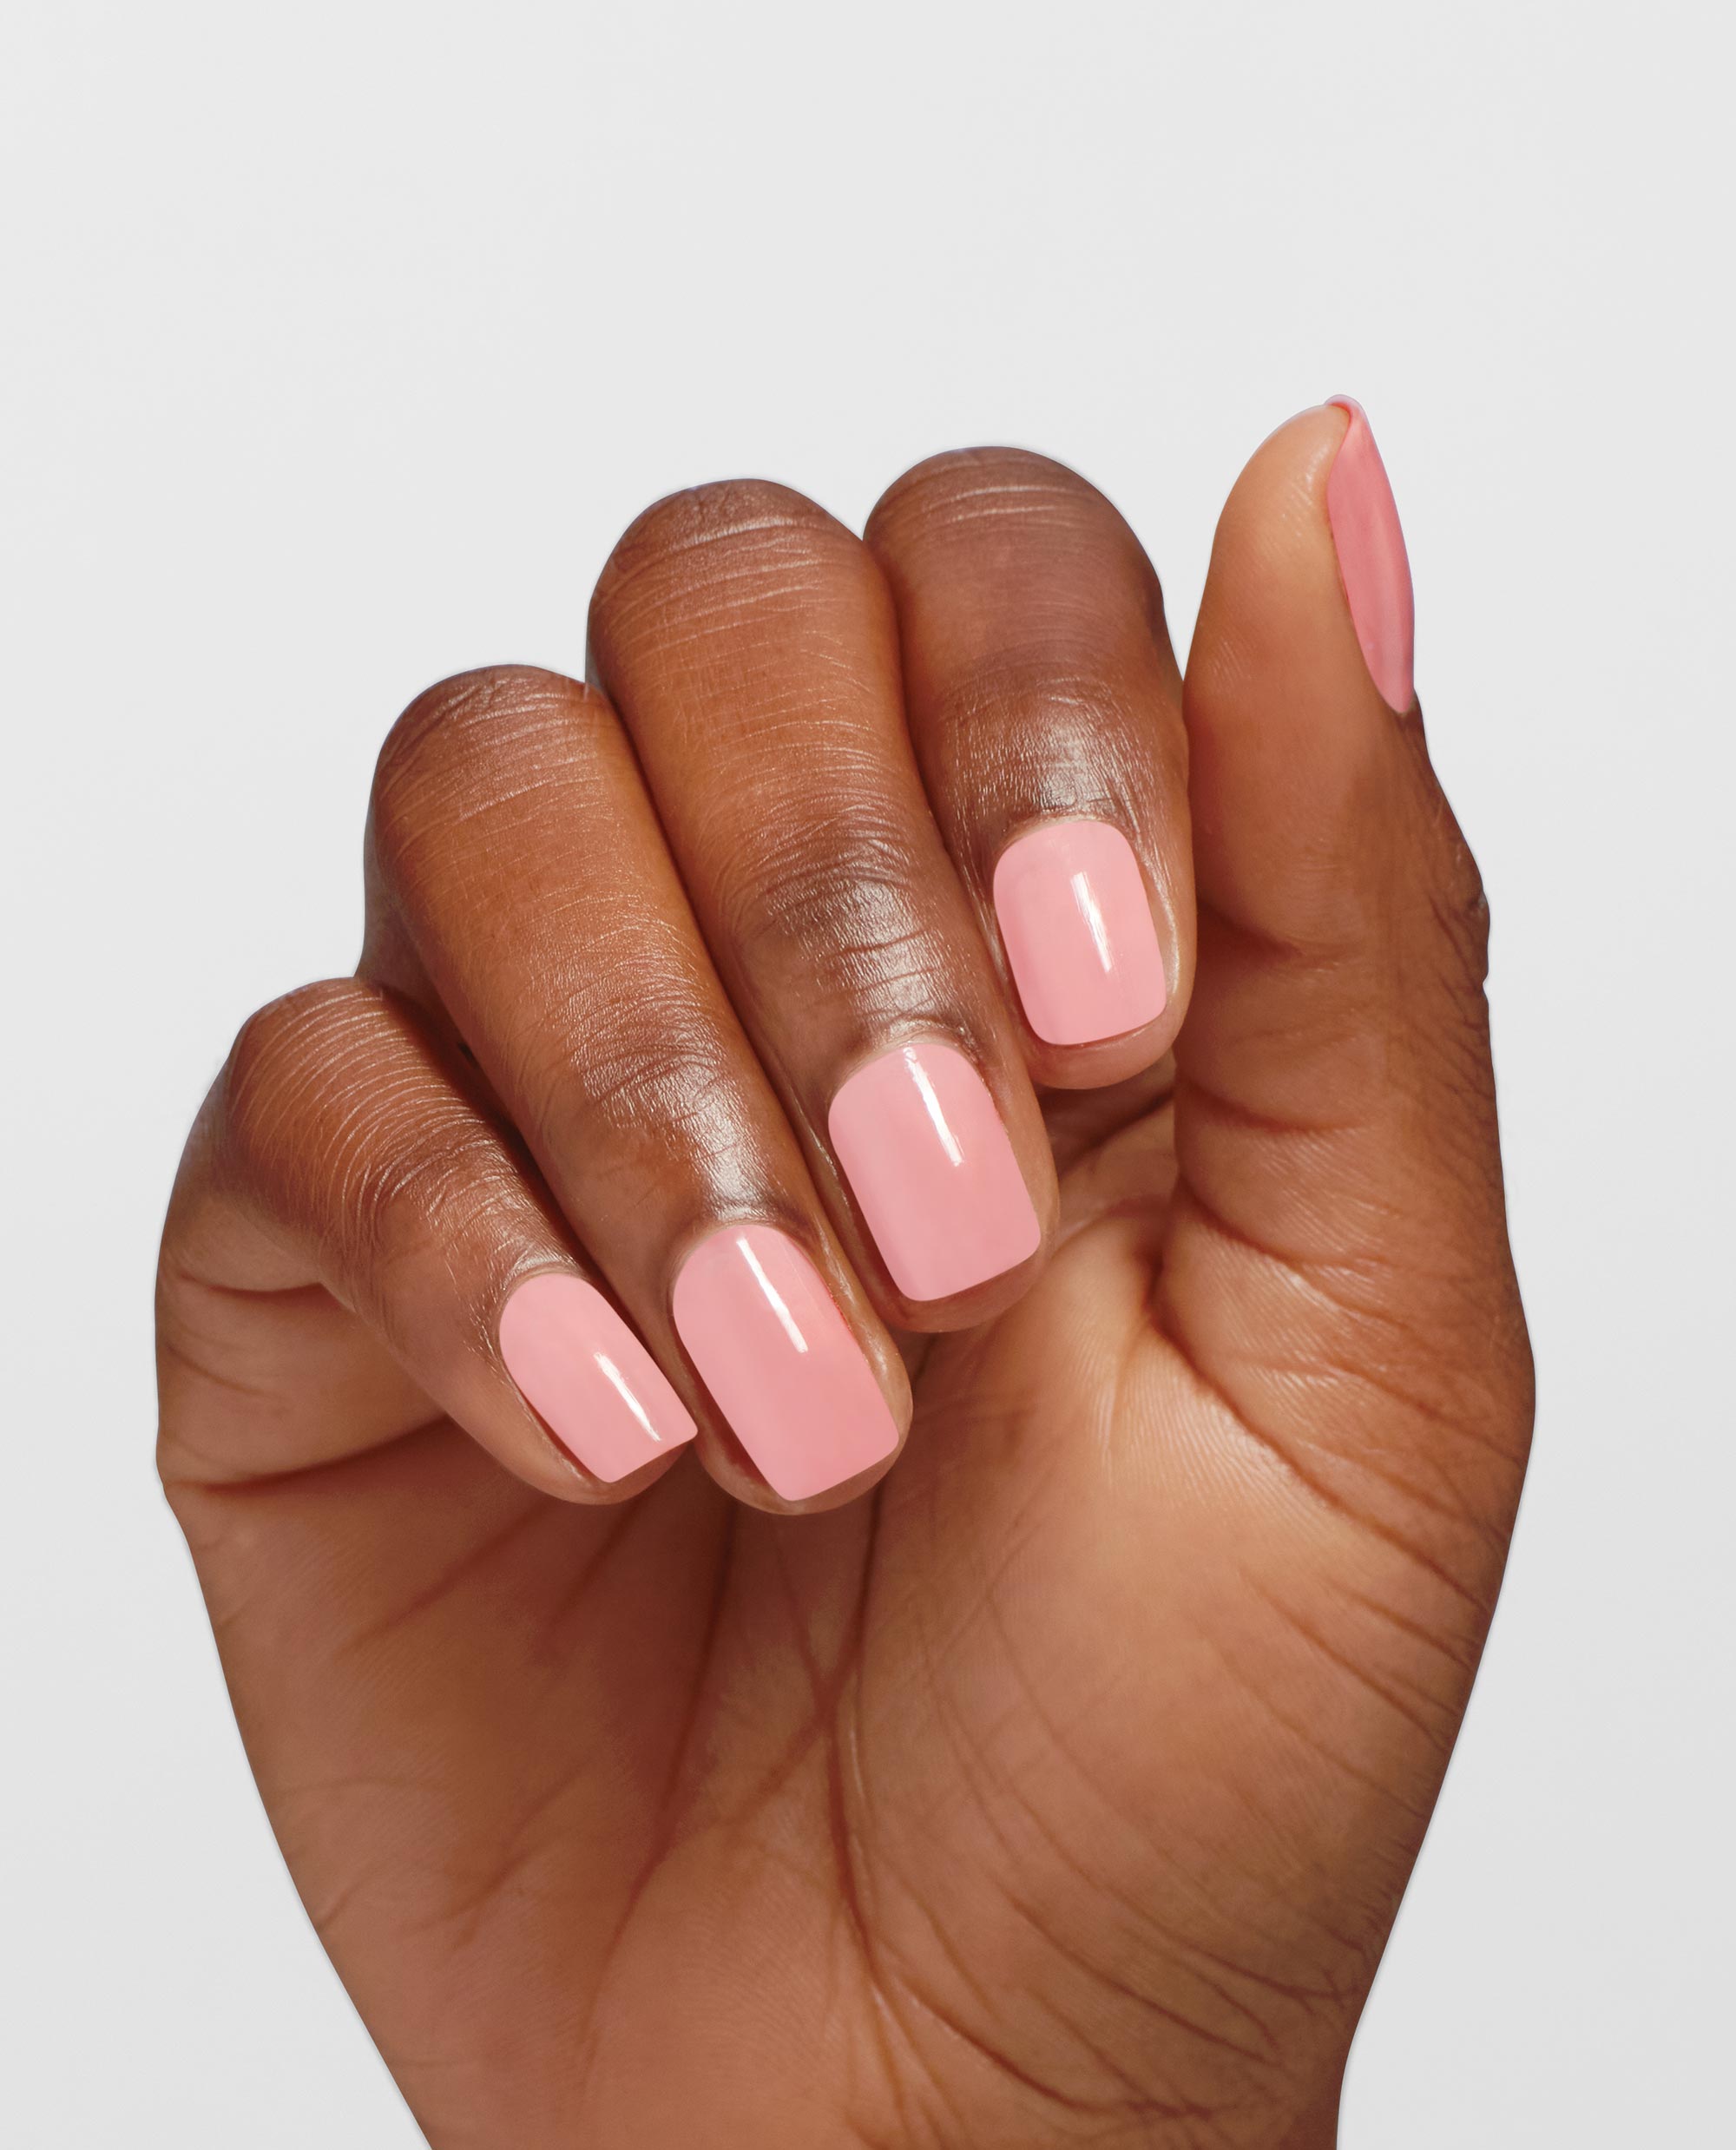 OPI Pretty Pink Perseveres Long-lasting Nail Polish Mani